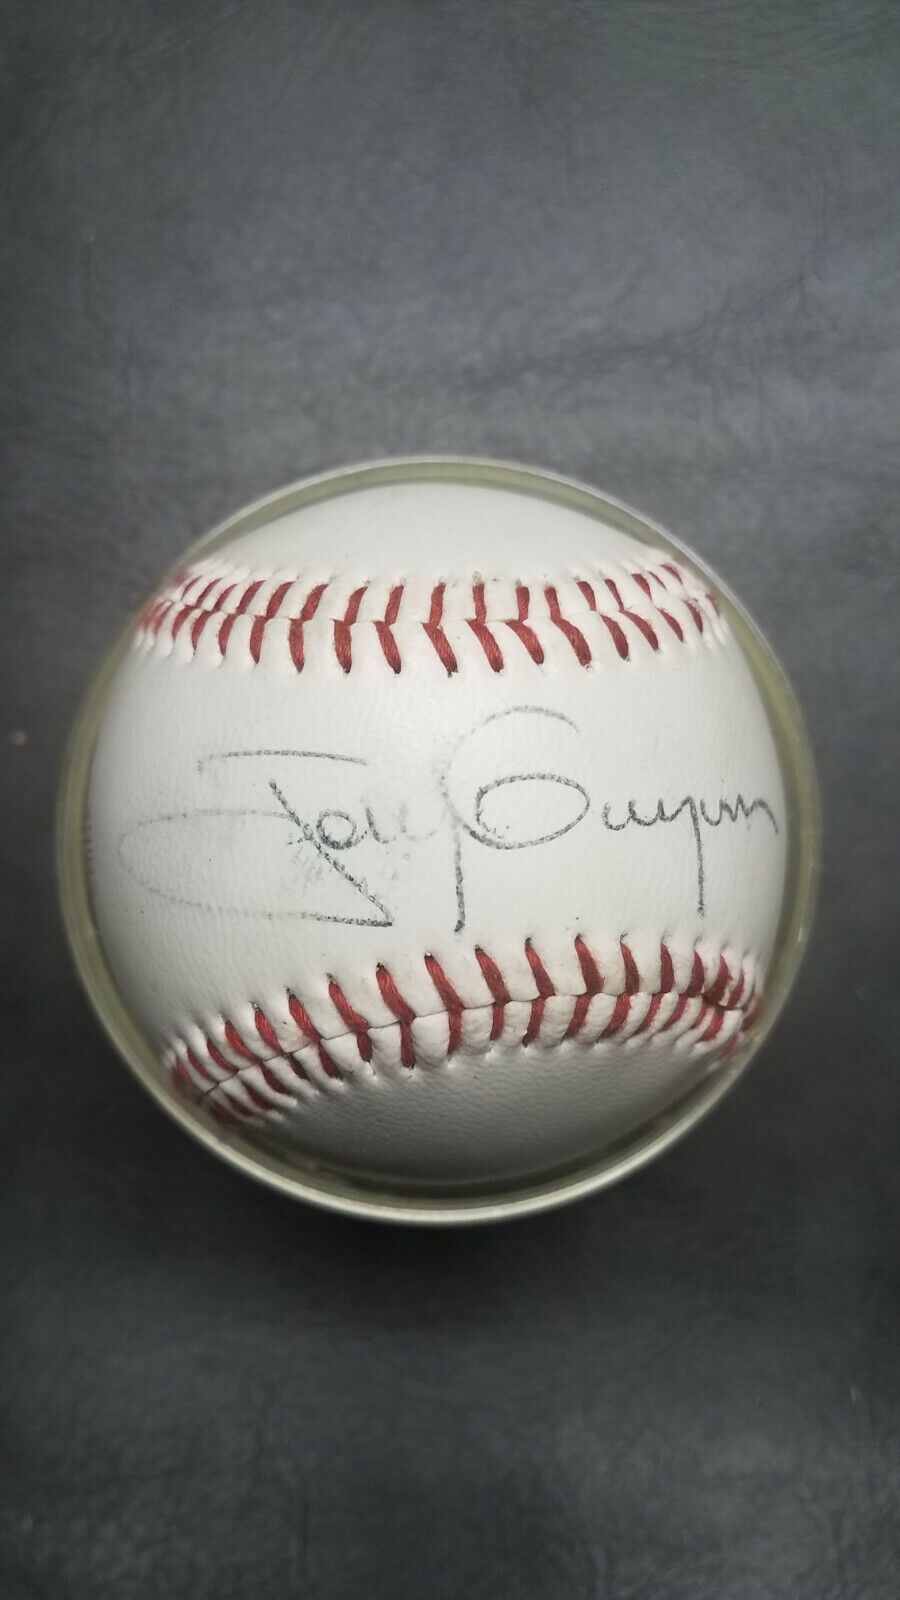 Tony Gwynn Signed Tony The Tiger Baseball